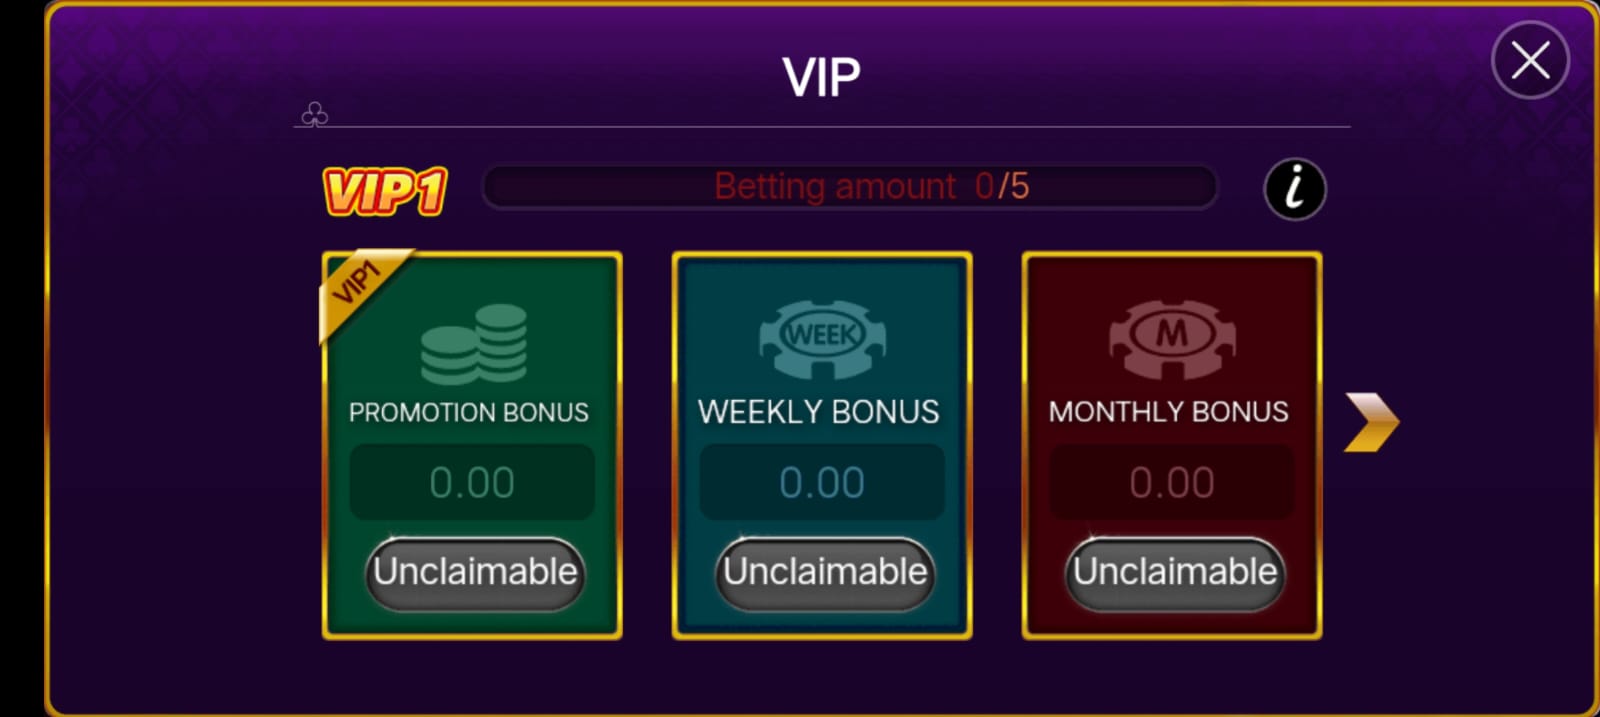 VIP Bonus In Rummy Pub App